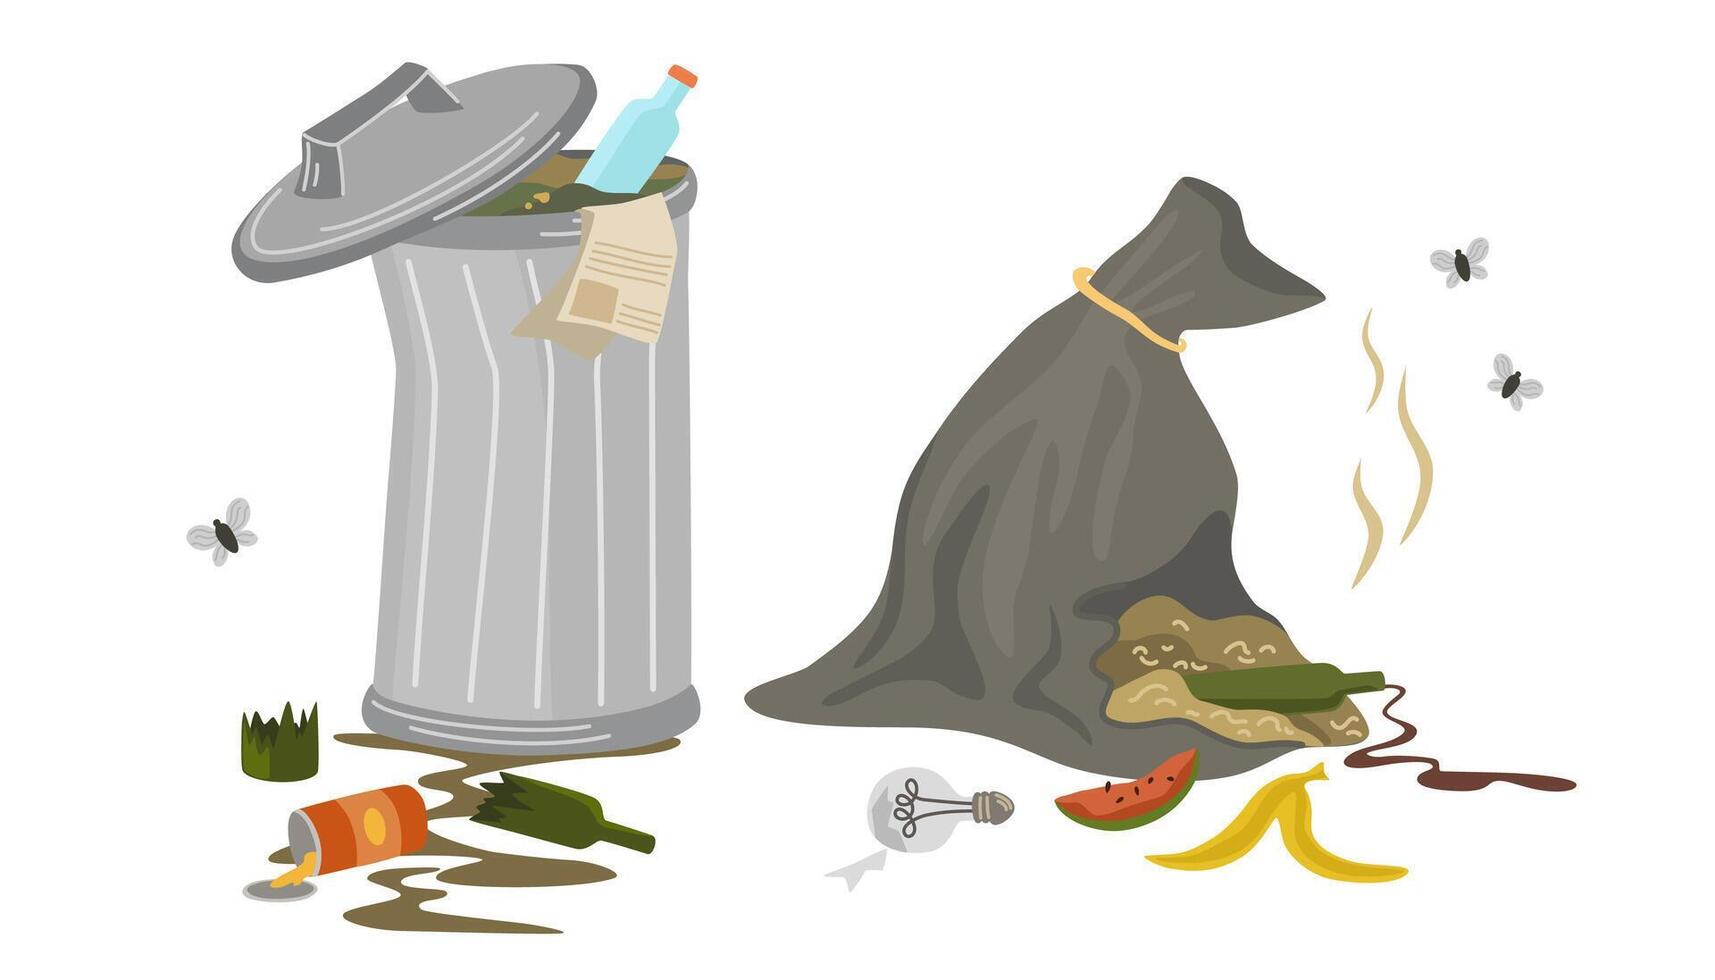 osorterade sopor i skräp behållare. avfall bin, sopor väska med avfall, mat, lampa och flugor. miljö- katastrof, sopor sortering. vektor skräp kan illustration av avfall sopor